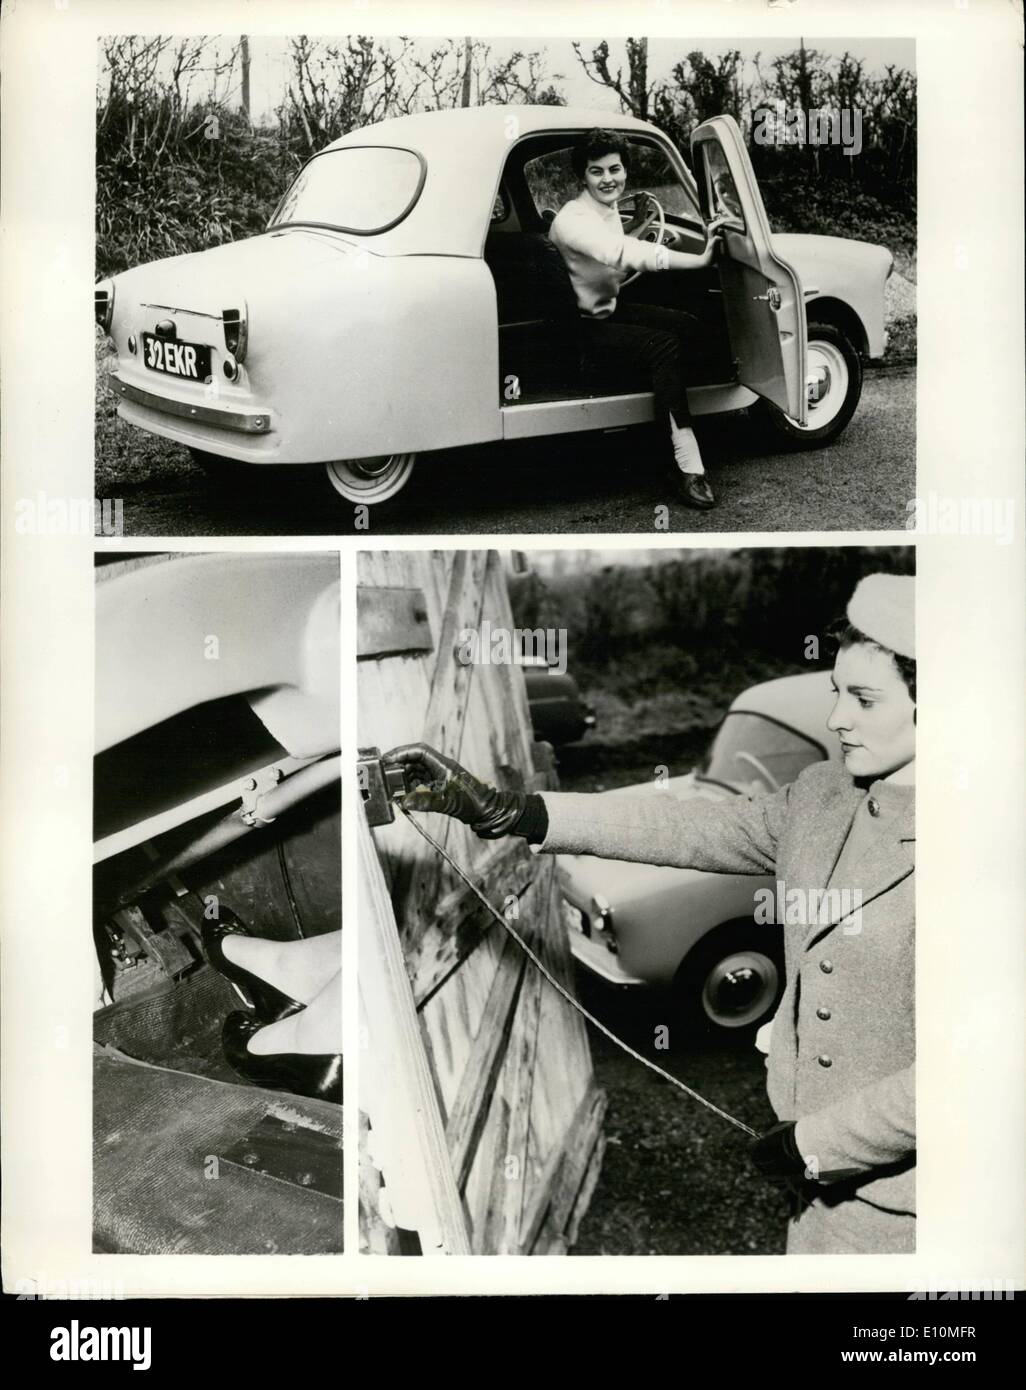 06 juin 1973 - Eleectric car coûte un tiers de cent un mile à courir; une voiture entièrement électronique a été développée en Angleterre. Appelé tel, il fonctionne sur une batterie légère au coût d'une farthing anglaise (1/3 d'un cent américain) un mile. Il est doté d'une carrosserie en fibre de verre, d'une portée de 40 miles sur une charge et d'une vitesse maximale de 50 mph. Il est considéré comme un « runabout » pour faire du shopping, pour aller à l'école et faire des excursions similaires. Le prix en Angleterre est de 1,260 environ. La photo montre le téléphone très conventionnel. En bas à gauche : la commande à deux pédales sans embrayage Banque D'Images